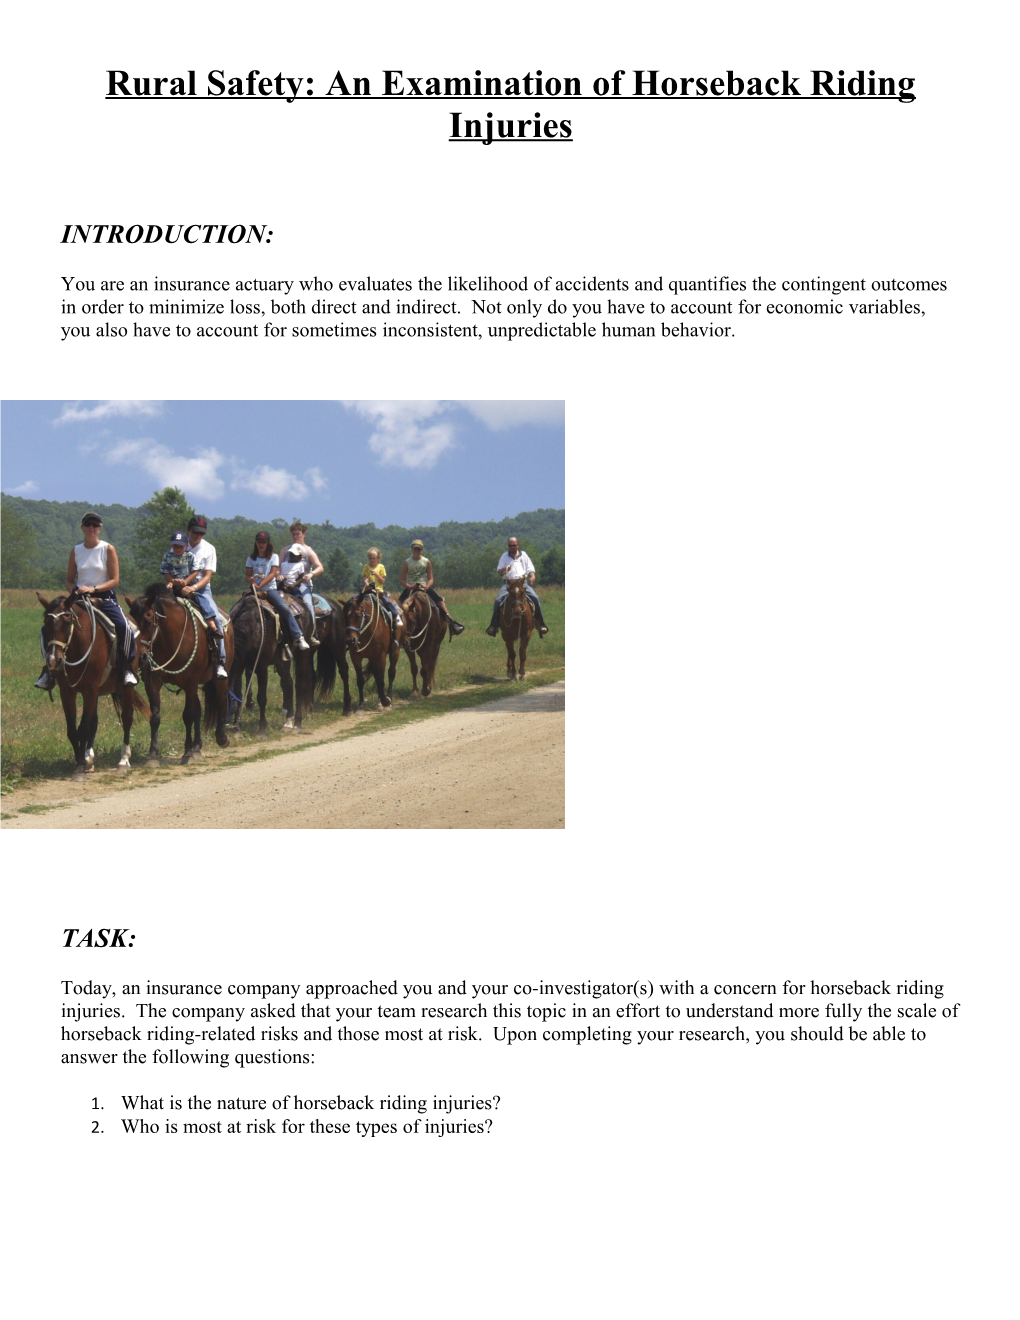 Rural Safety: an Examination of Horseback Riding Injuries